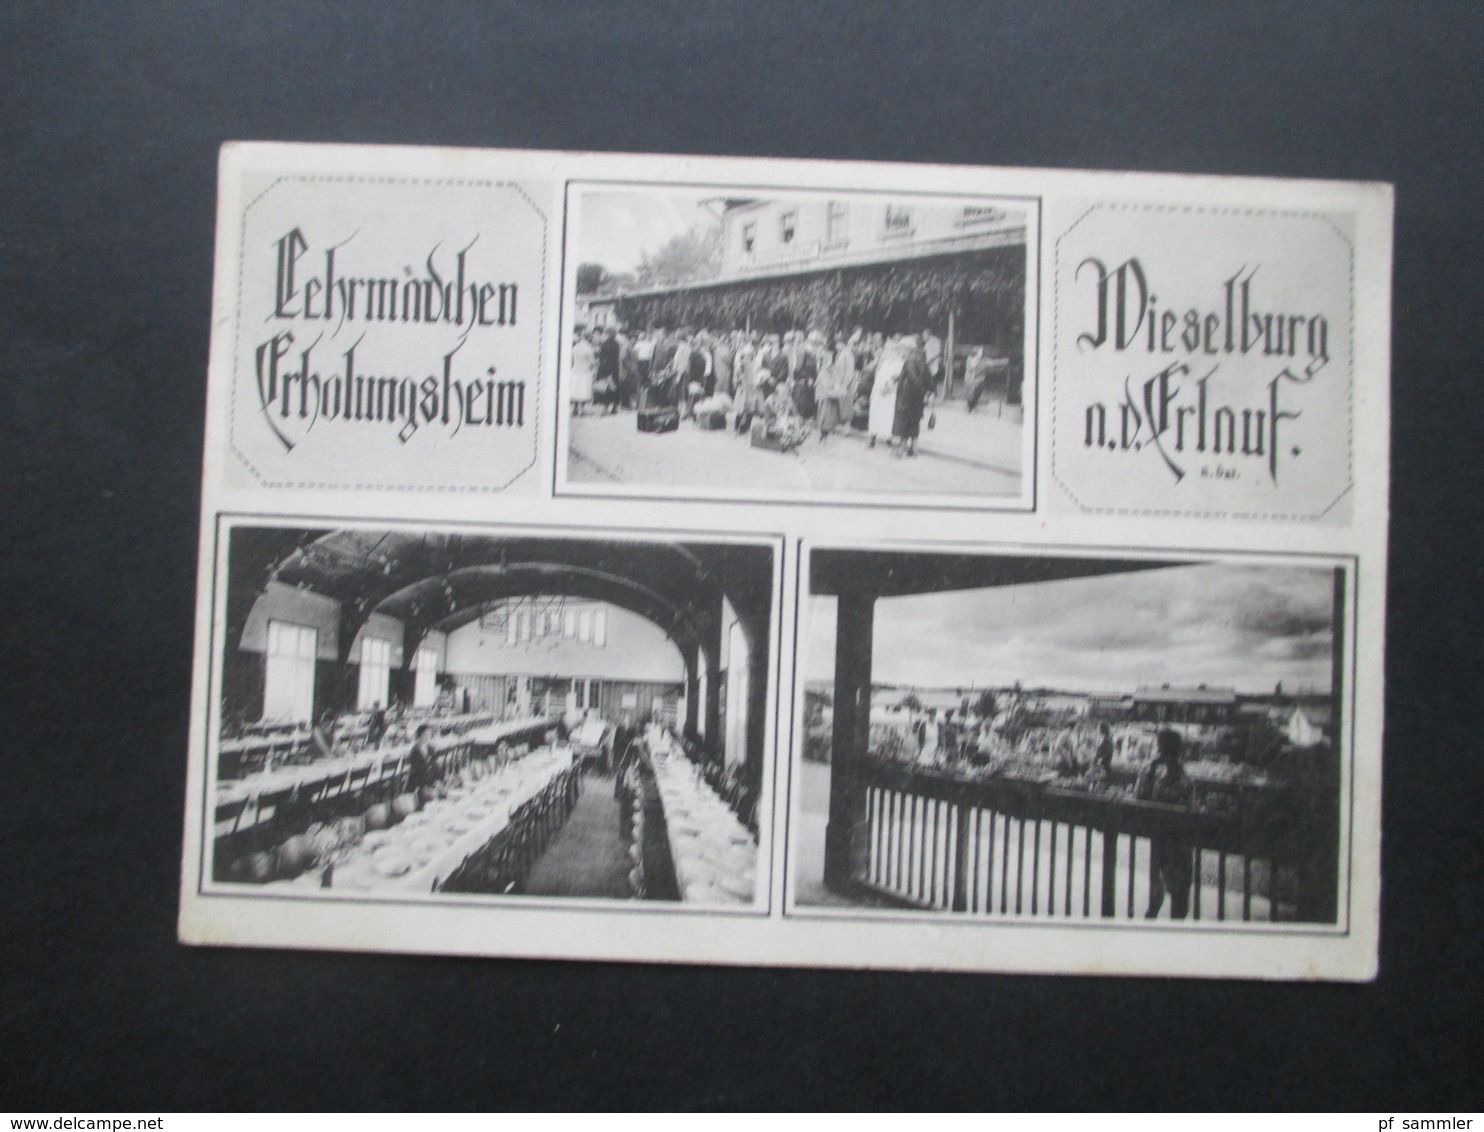 Österreich 1925 Mehrbildkarte Lehrmädchen Erholungsheim Wieselburg A.d. Erlauf Phot. J. Perscheid, Wien III - Alberghi & Ristoranti